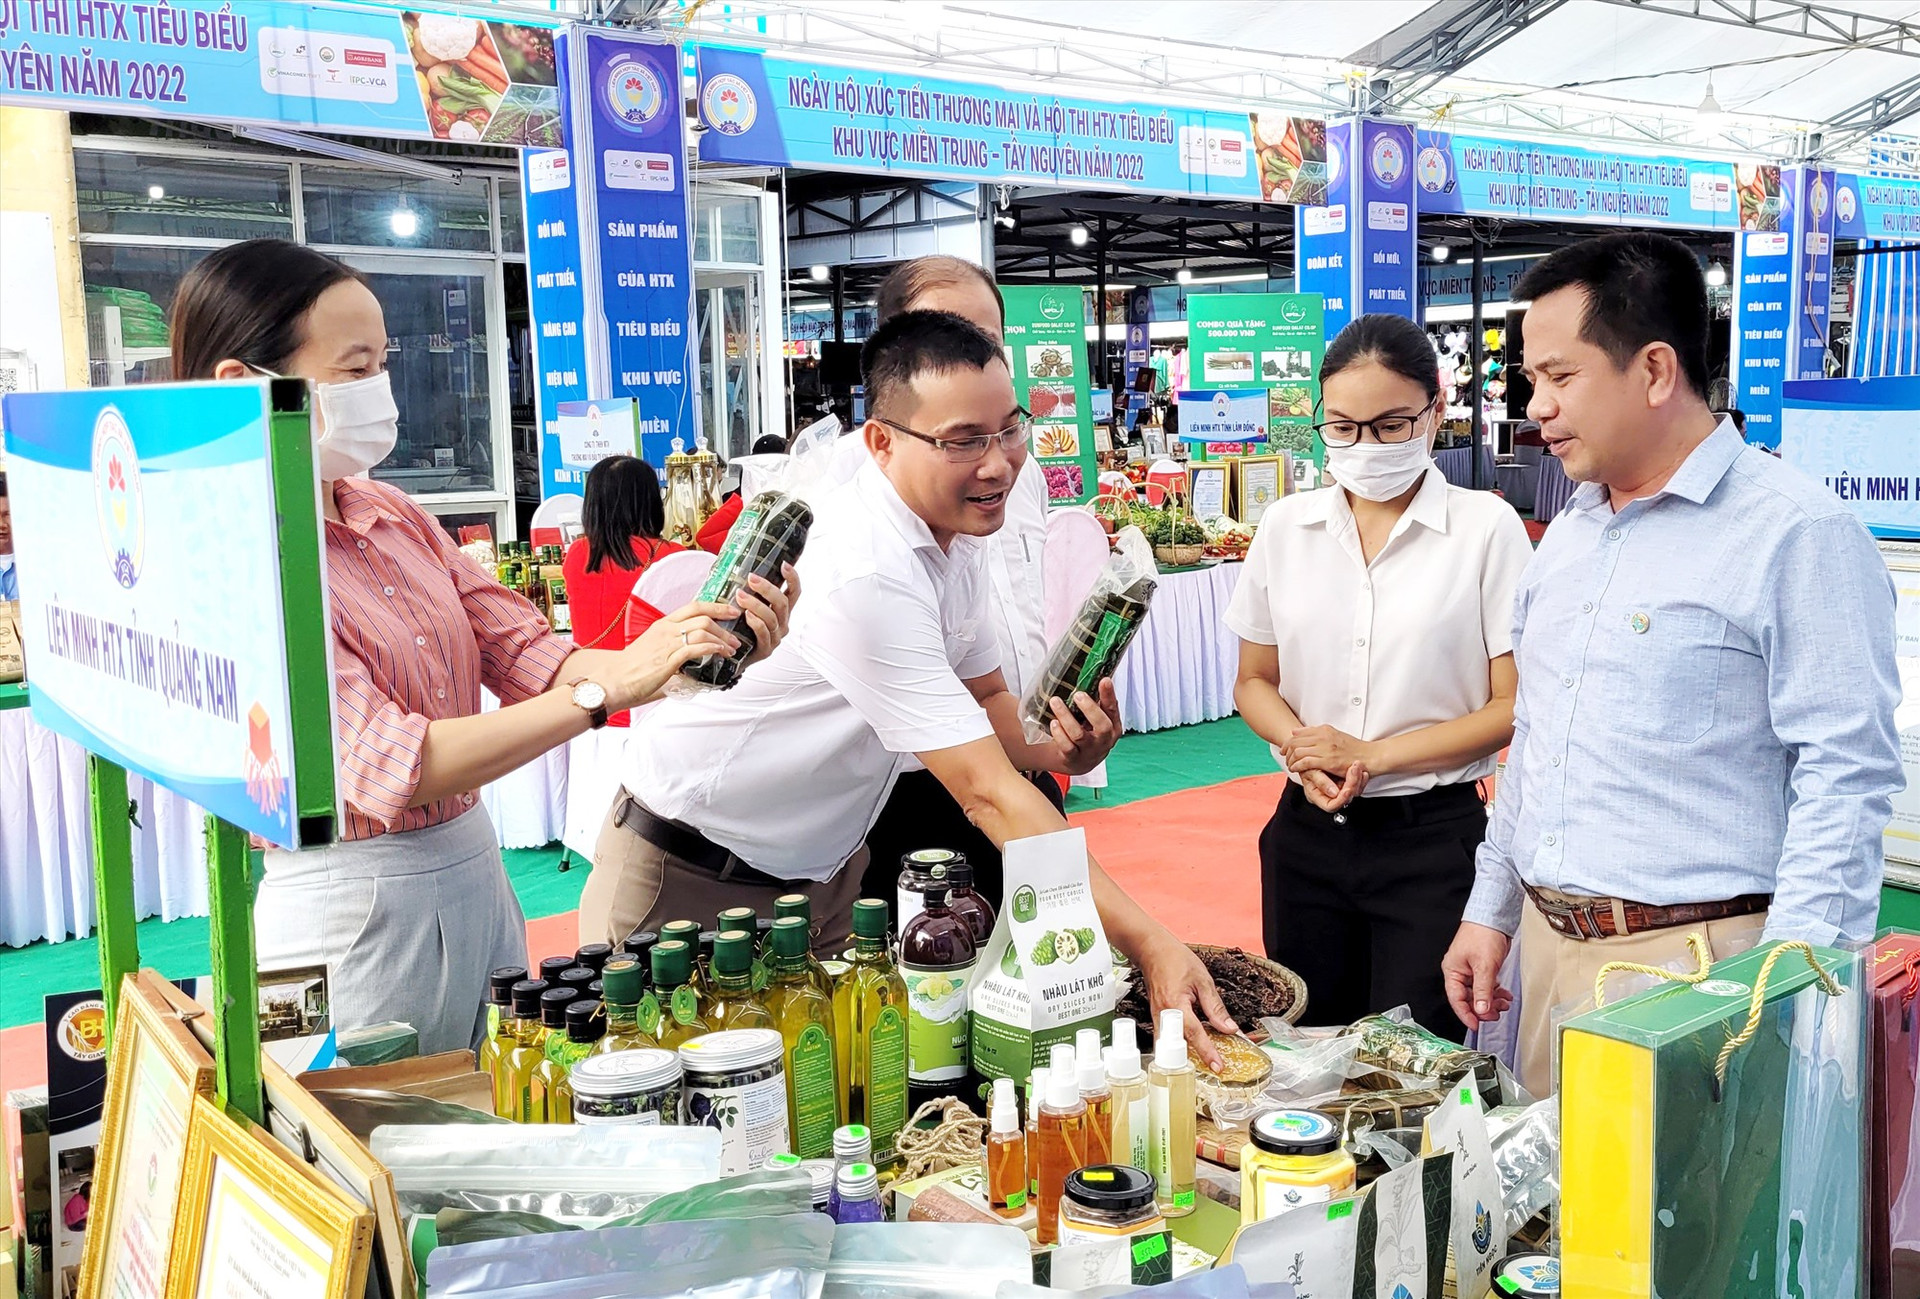 Các sản phẩm tiêu biểu trong tỉnh tham gia trưng bày, giới thiệu trong khuôn khổ Diễn đàn kinh tế tập thể, hợp tác xã khu vực miền Trung - Tây Nguyên vừa diễn ra tại Quảng Nam. Ảnh: VINH ANH